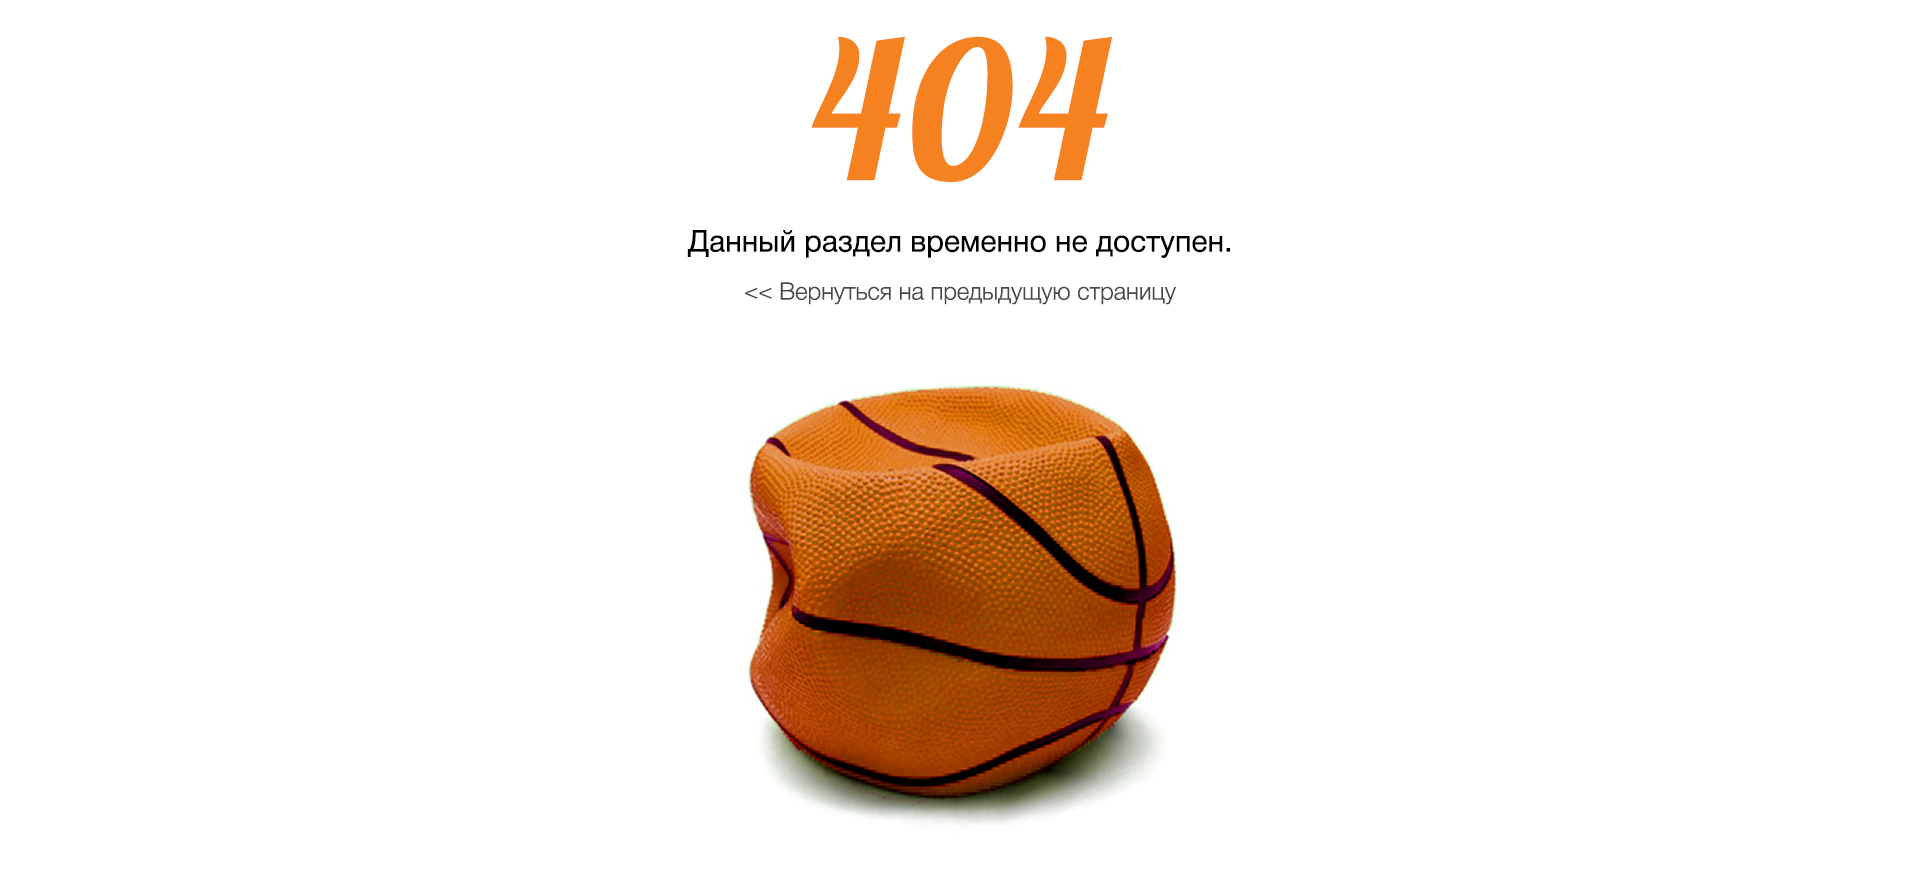 дизайн страницы 404 спортивного магазина